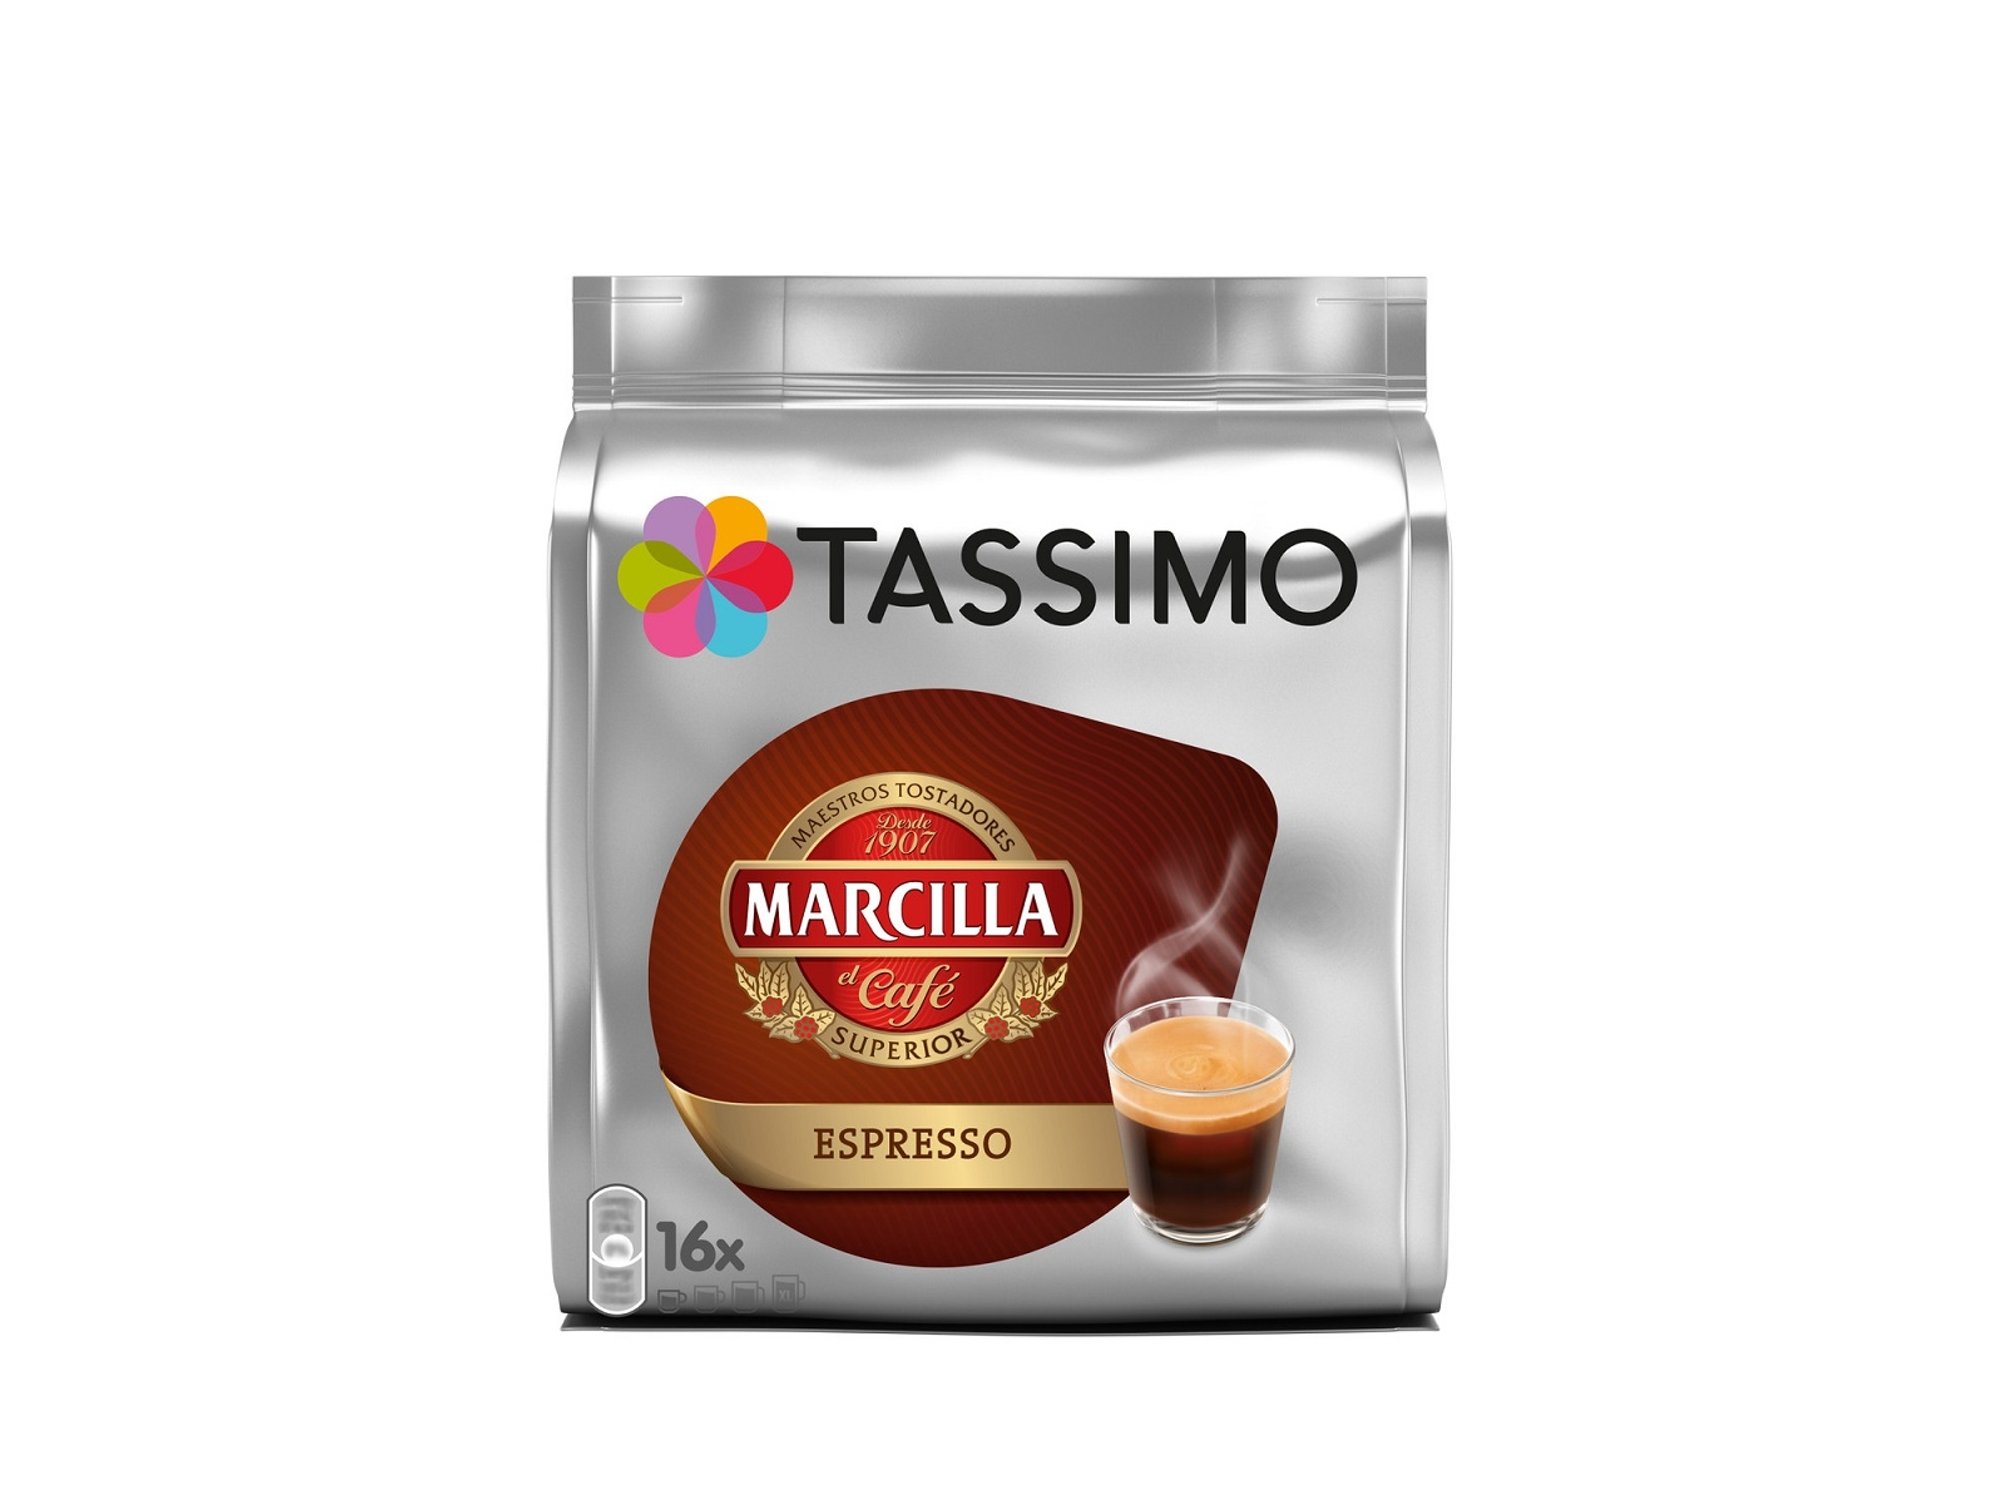 Tassimo - Ofertas en cápsulas y cafeteras Tassimo